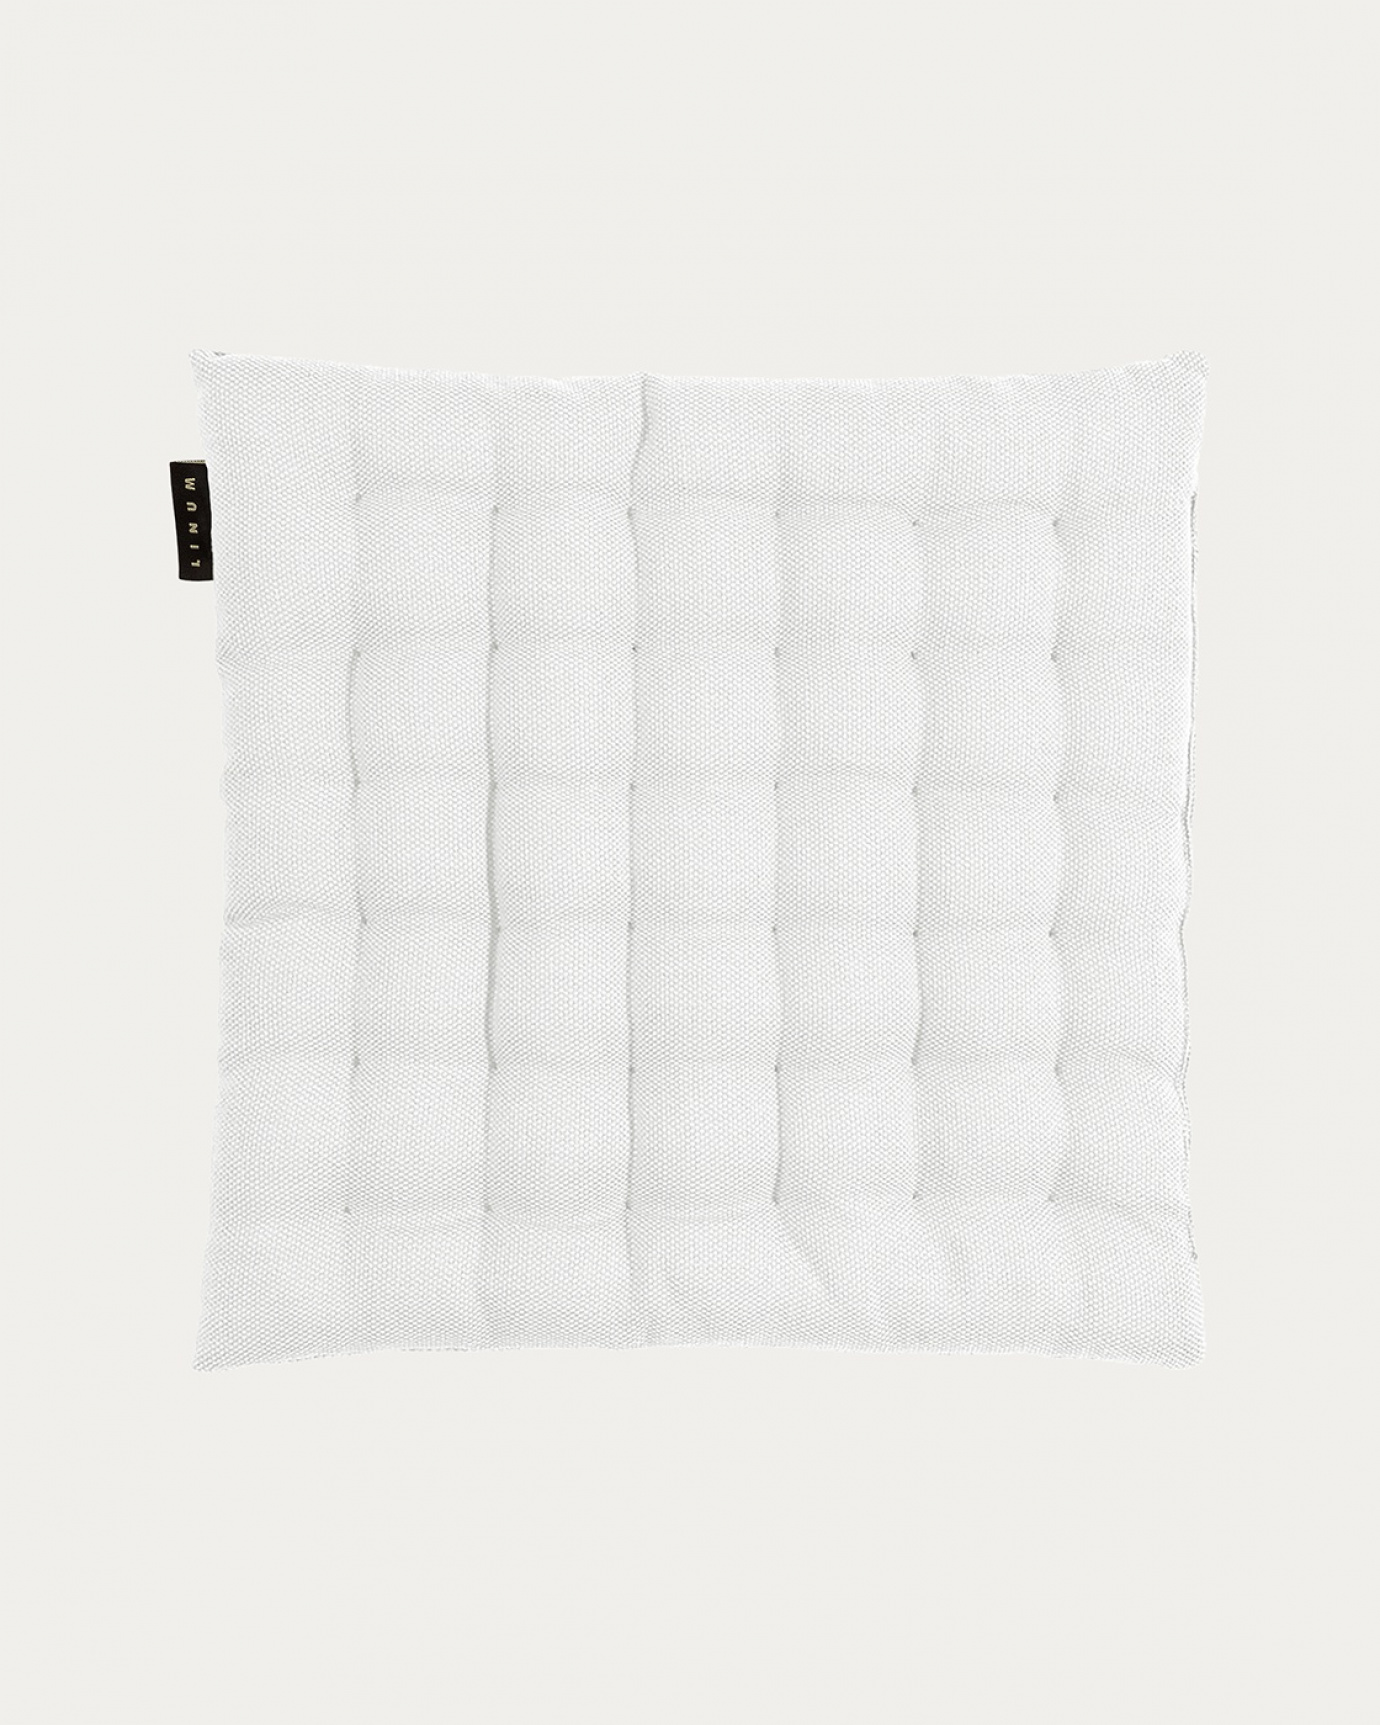 Produktbild weiß PEPPER Sitzkissen aus weicher Baumwolle mit Füllung aus recyceltem Polyester von LINUM DESIGN. Größe 40x40 cm.